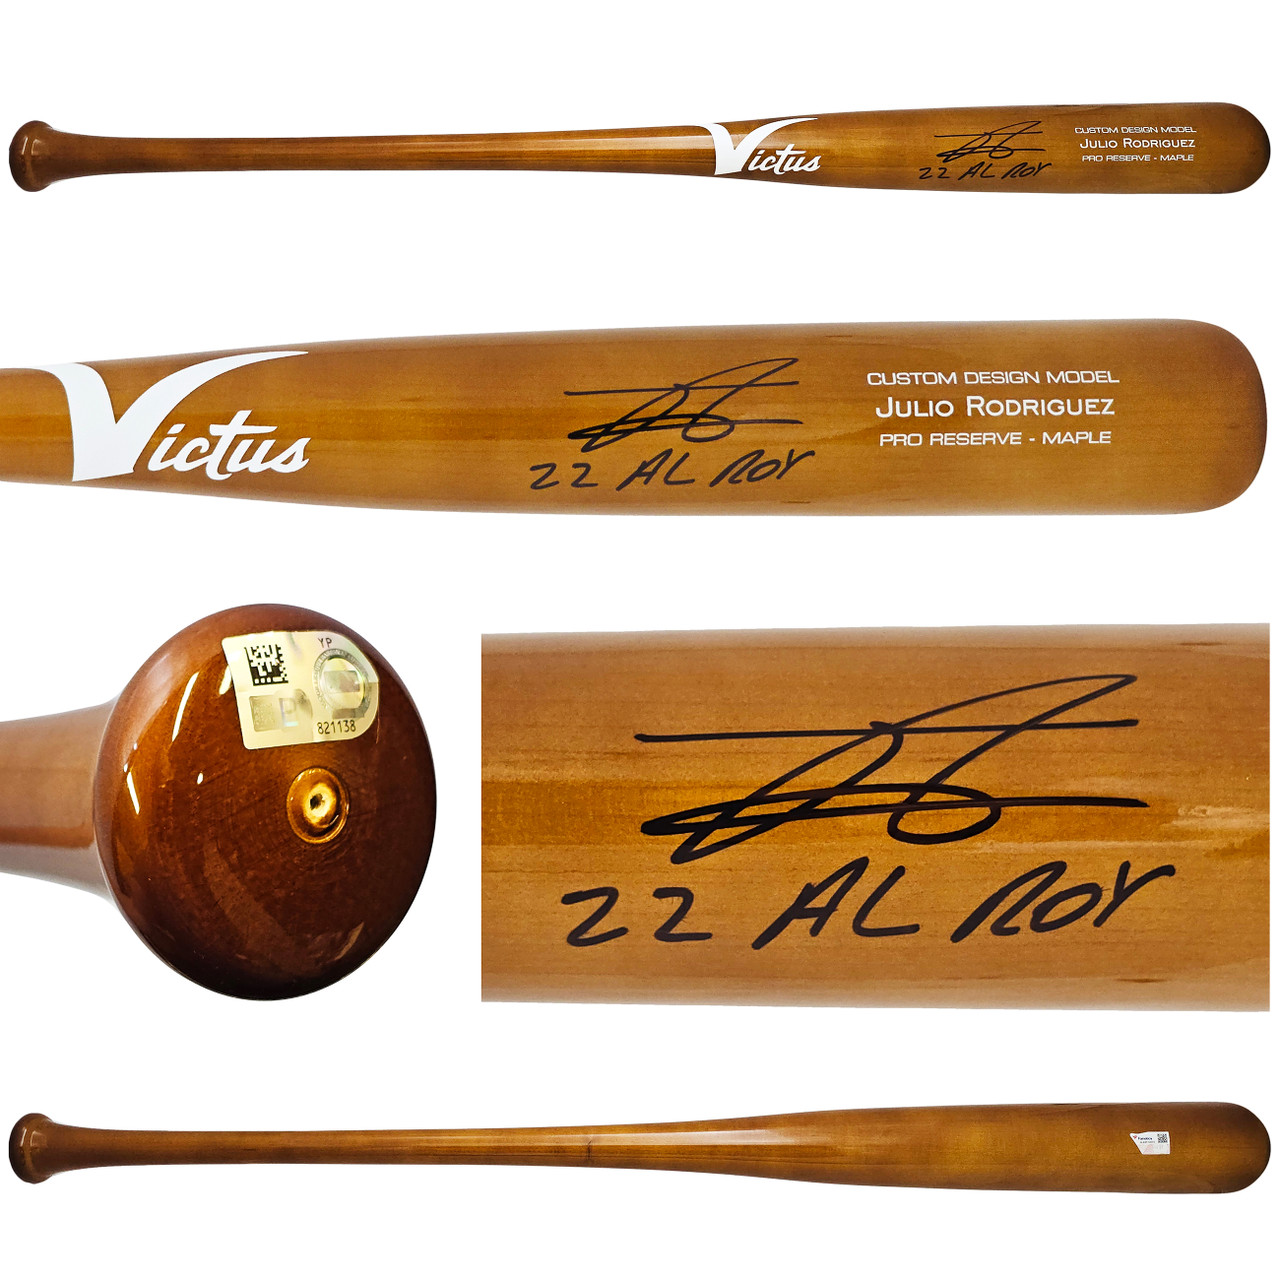 Julio Rodriguez Autographed Brown Victus Pro Reserve Maple Bat